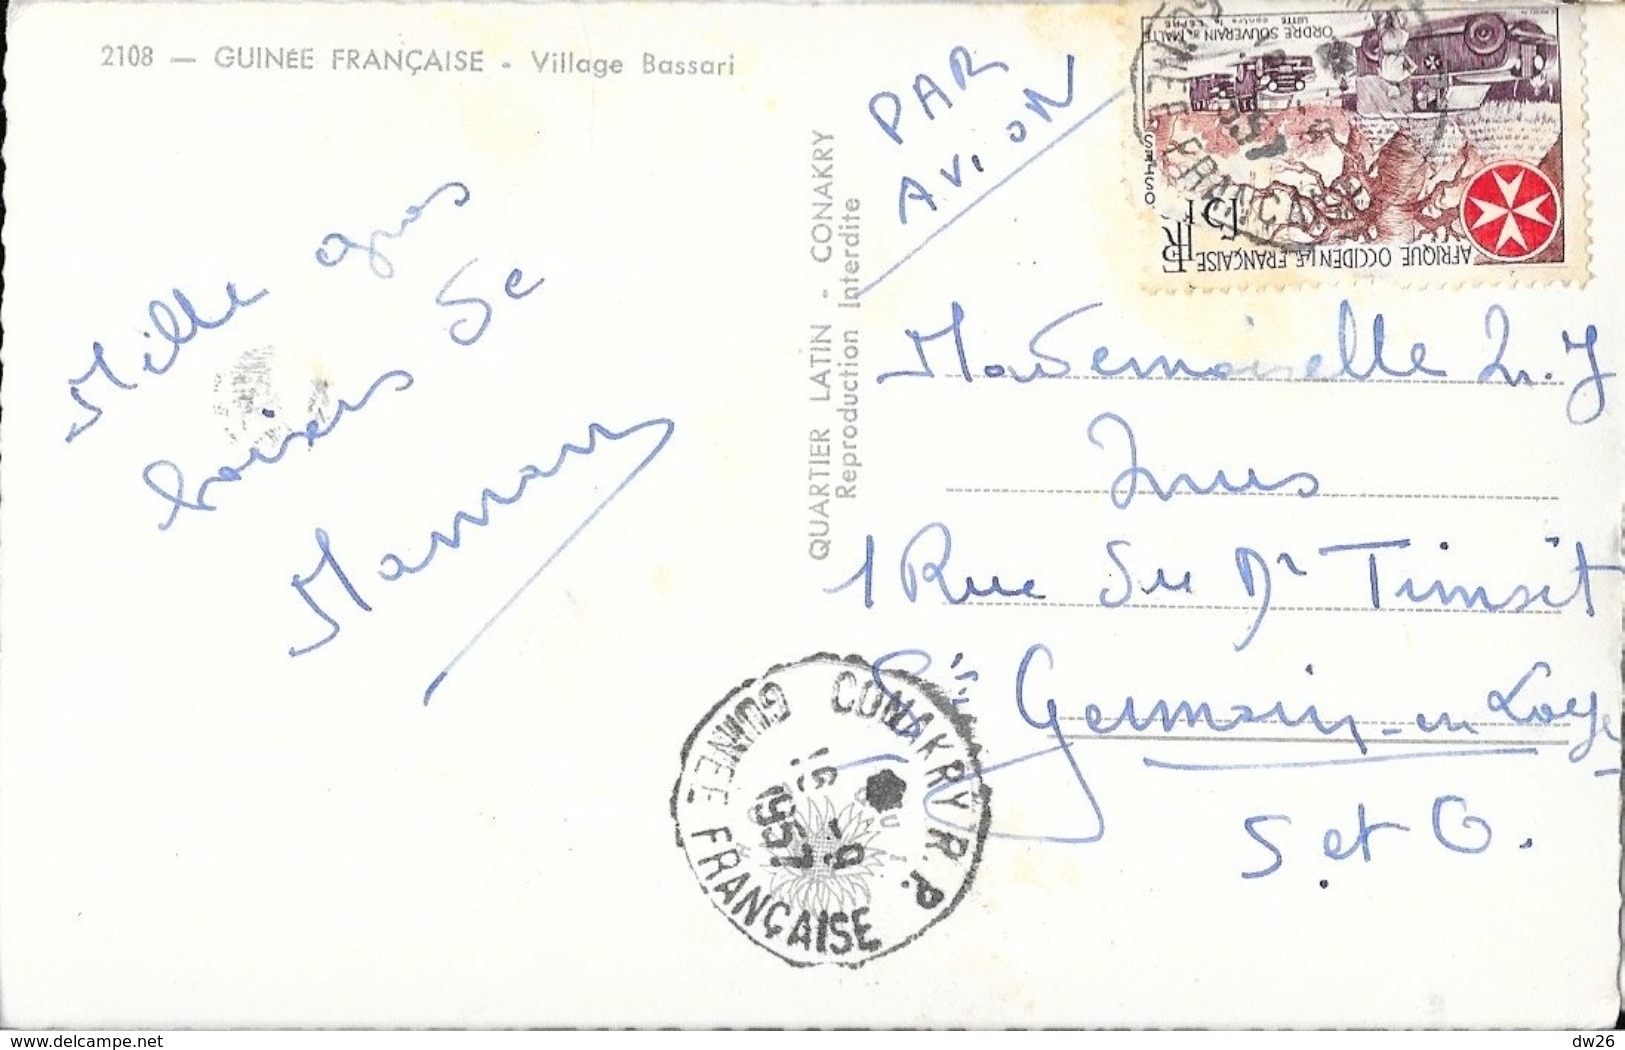 Guinée Française (A.O.F.) - Village Bassari - Edition Quartier Latin, Konakry - Guinée Française